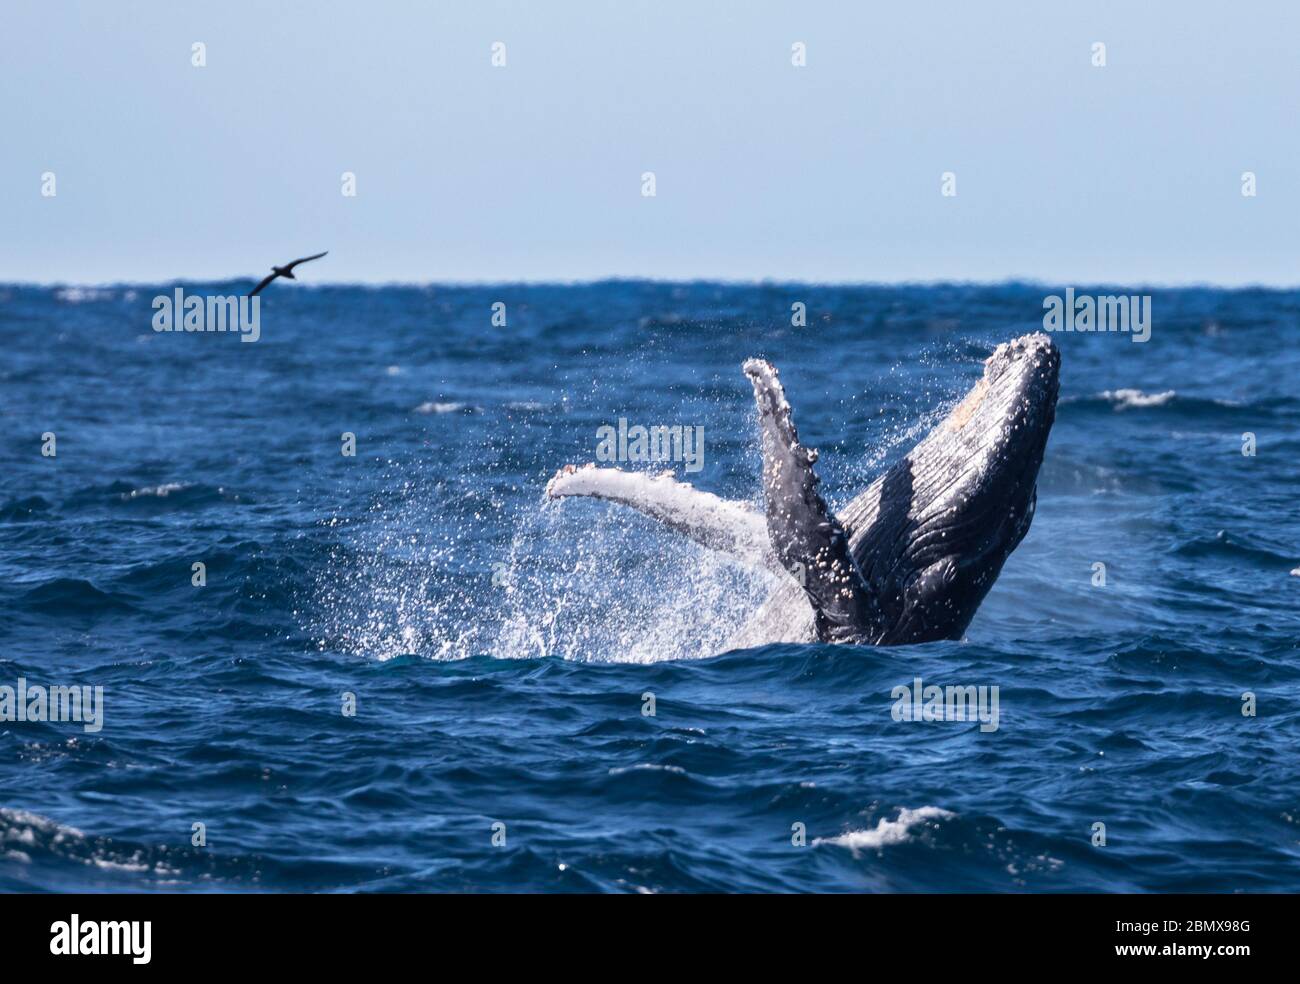 Der Agulhas-Strom, Indischer Ozean, Südafrika, ist eine wichtige Zugroute für Buckelwale, Megaptera novaeangliae. Stockfoto